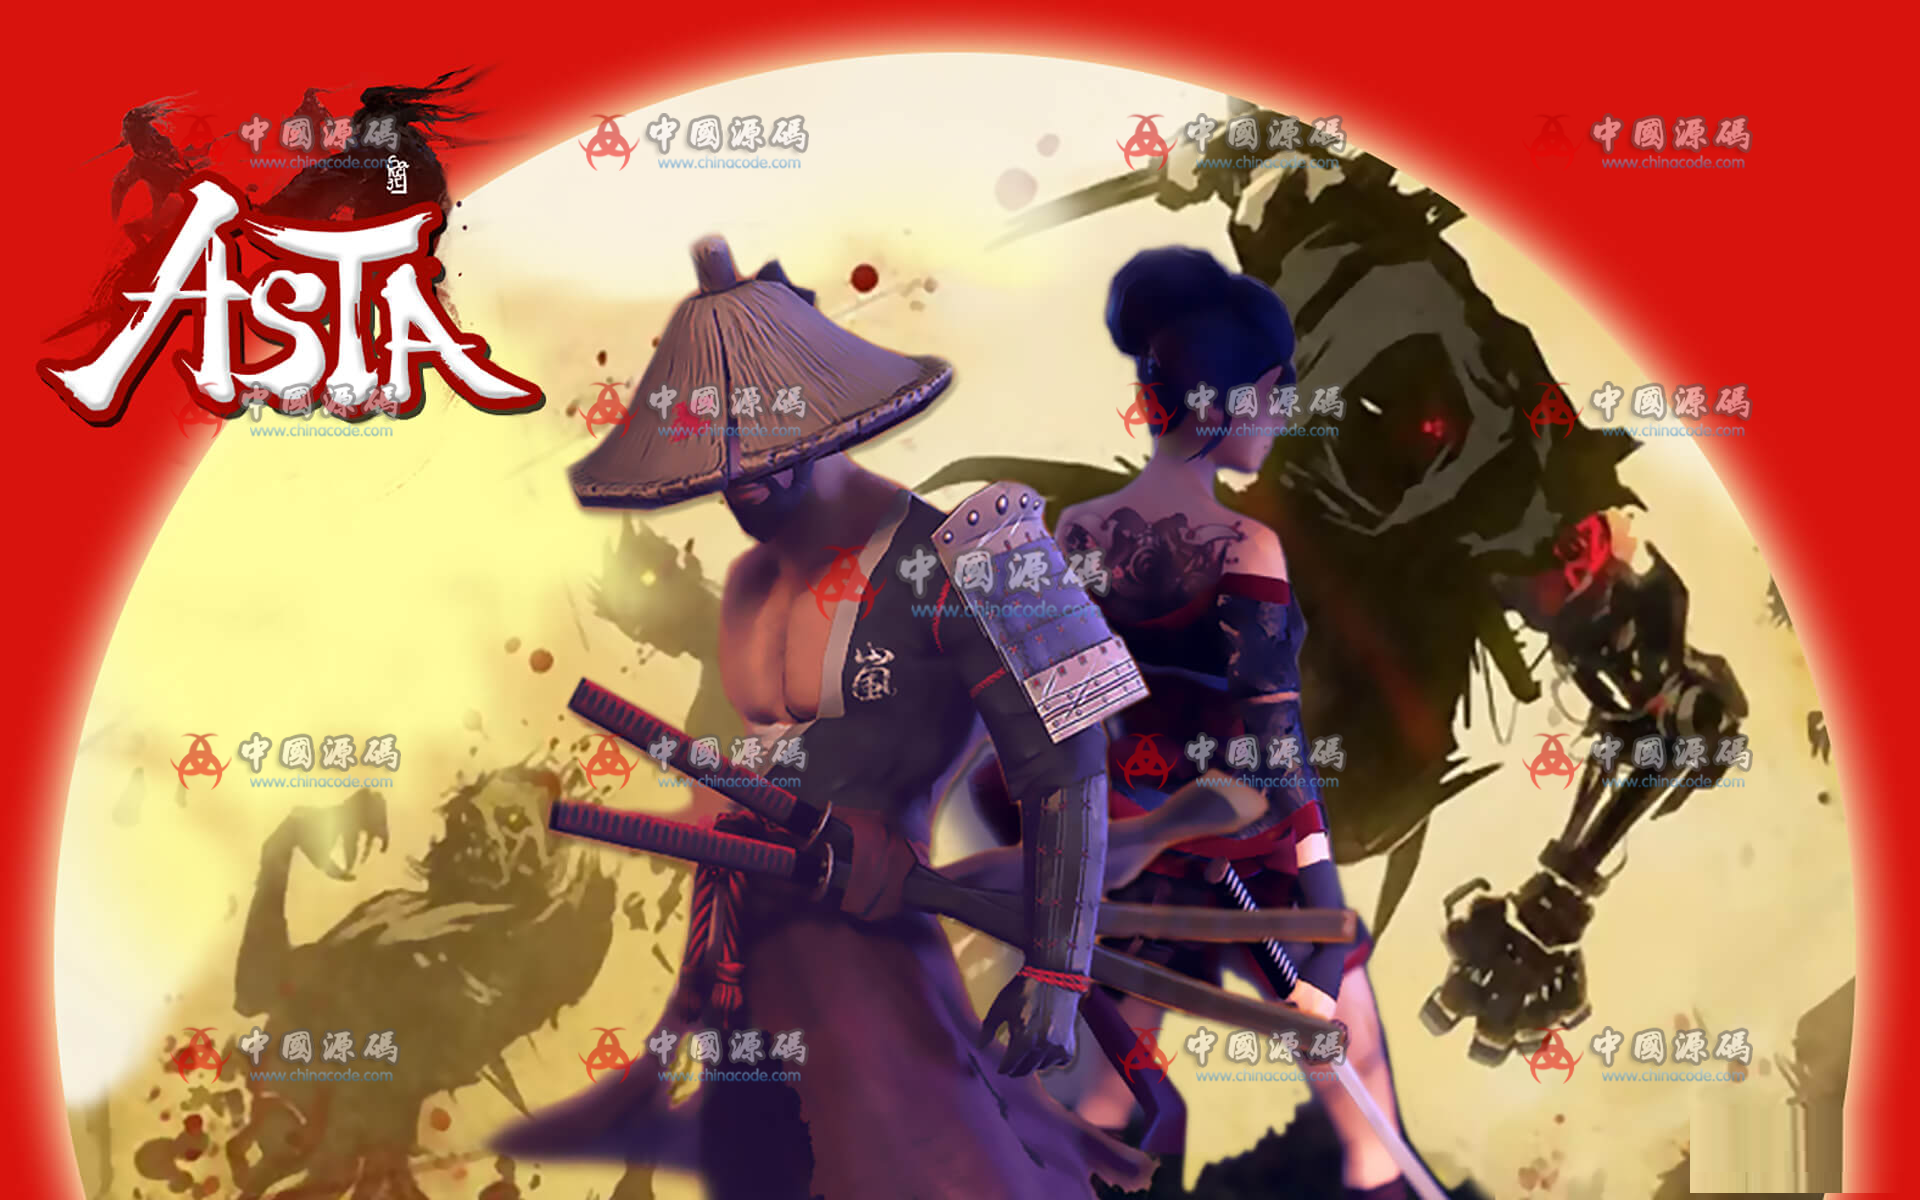 横版武士动作游戏源码ASTS : Samurai Warriors 手游-第1张